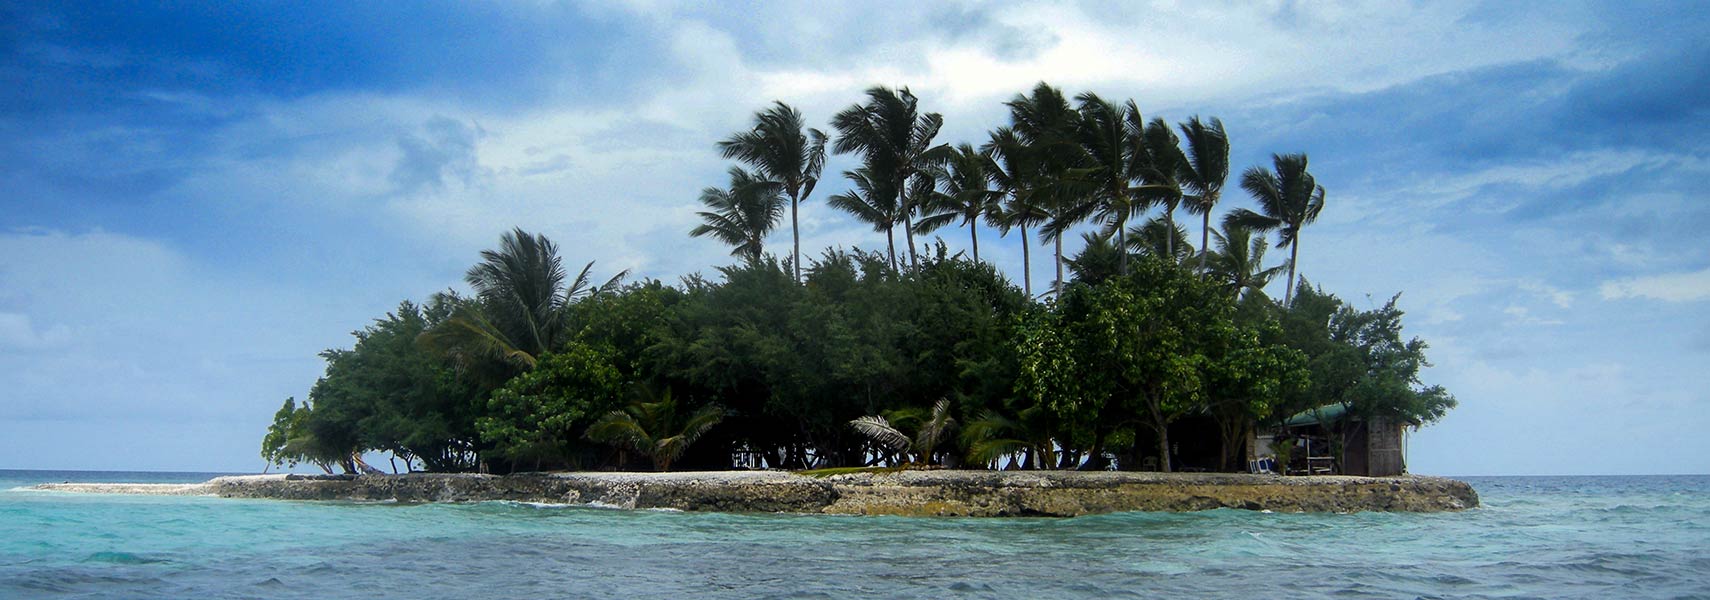 Jeep island, Chuuk, FSM